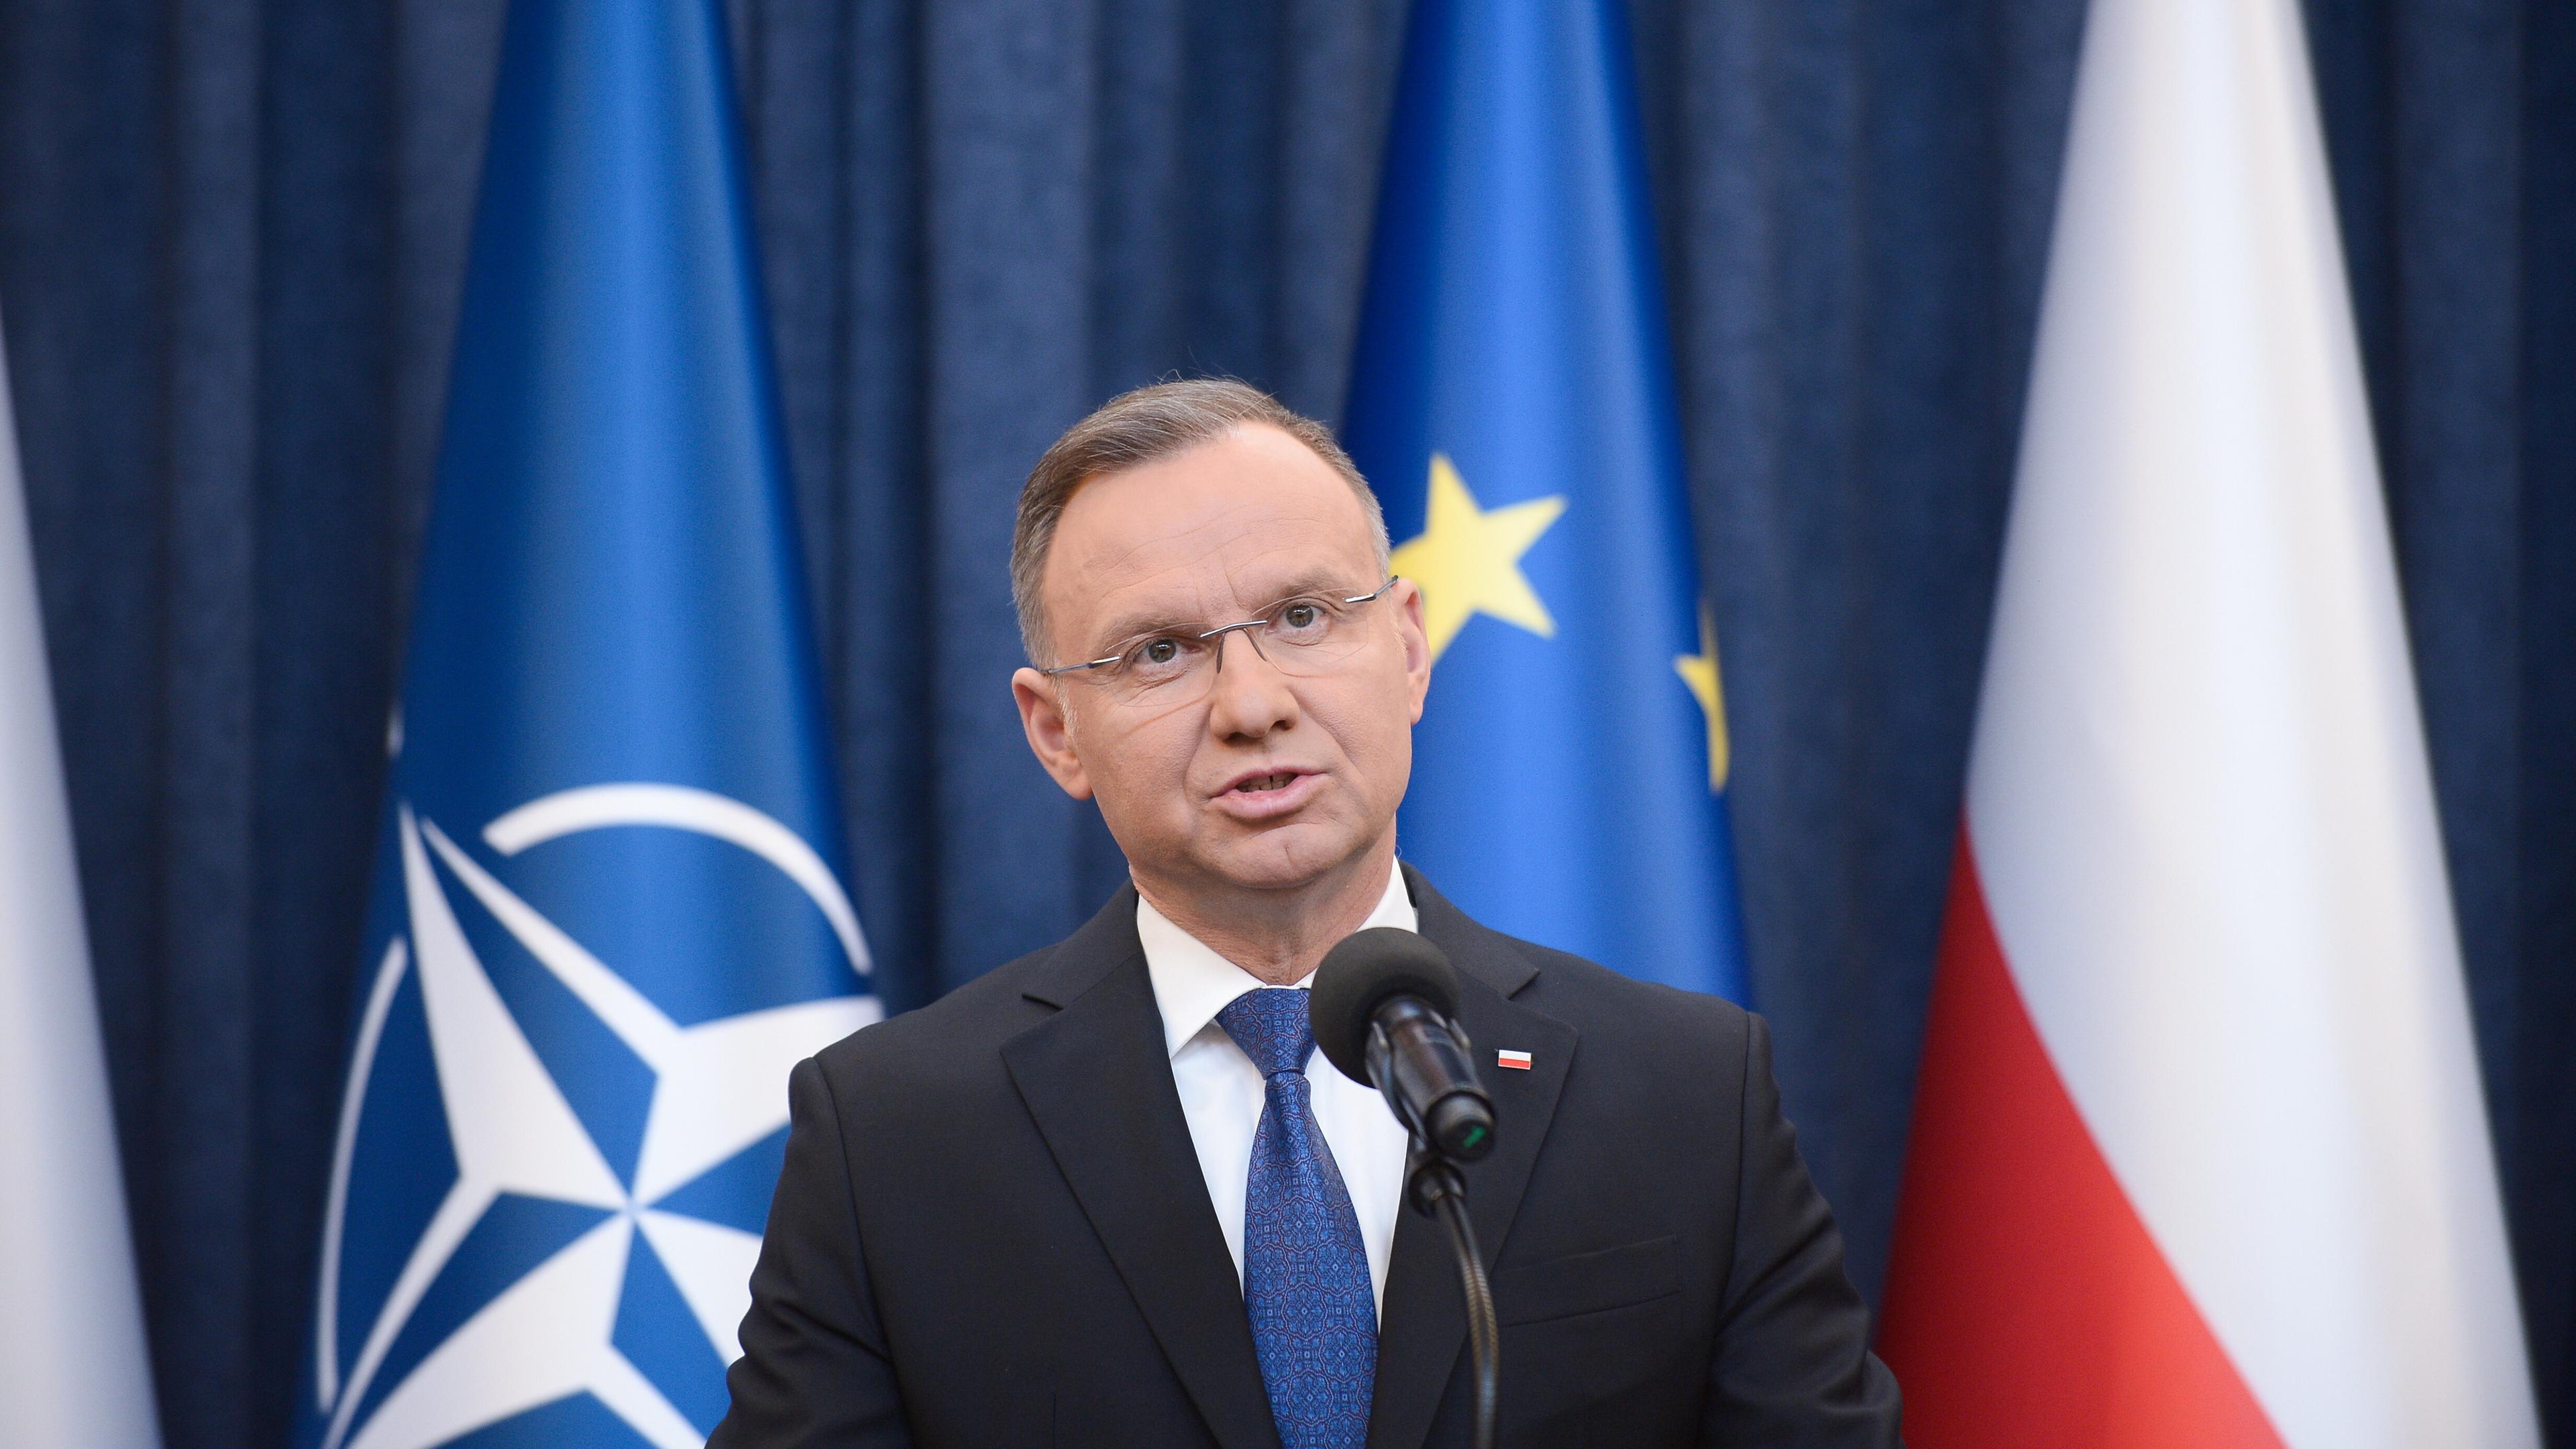 Polen, Warschau: Andrzej Duda, Präsident von Polen, spricht während einer Presseerklärung im Präsidentenpalast.